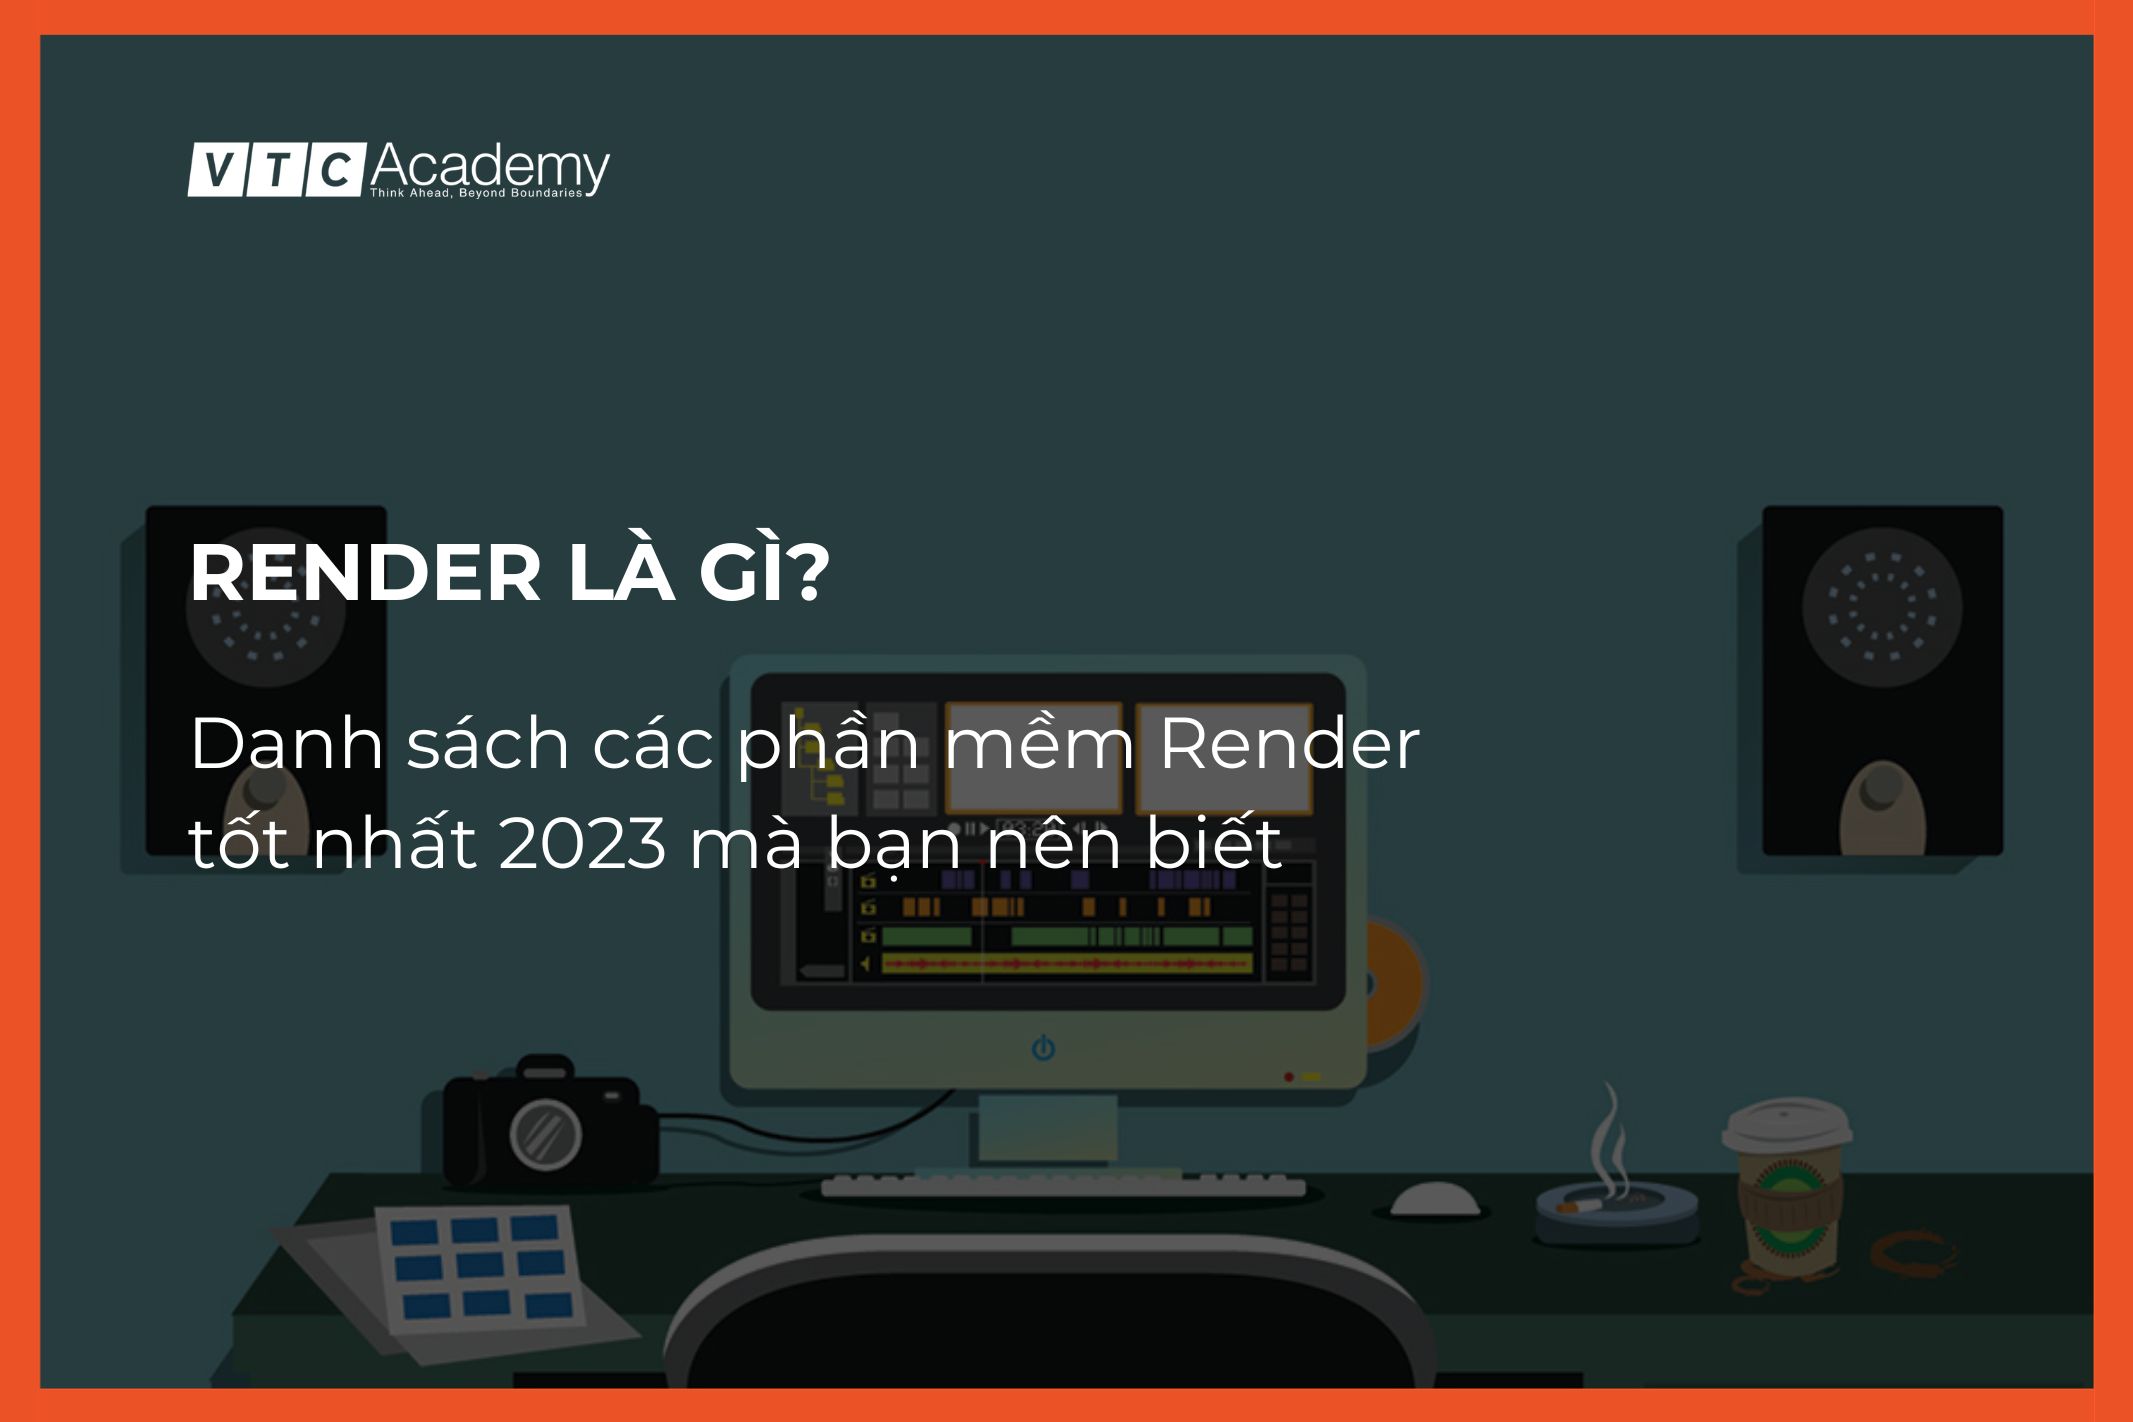 Render là gì? Danh sách các phần mềm Render tốt nhất 2023